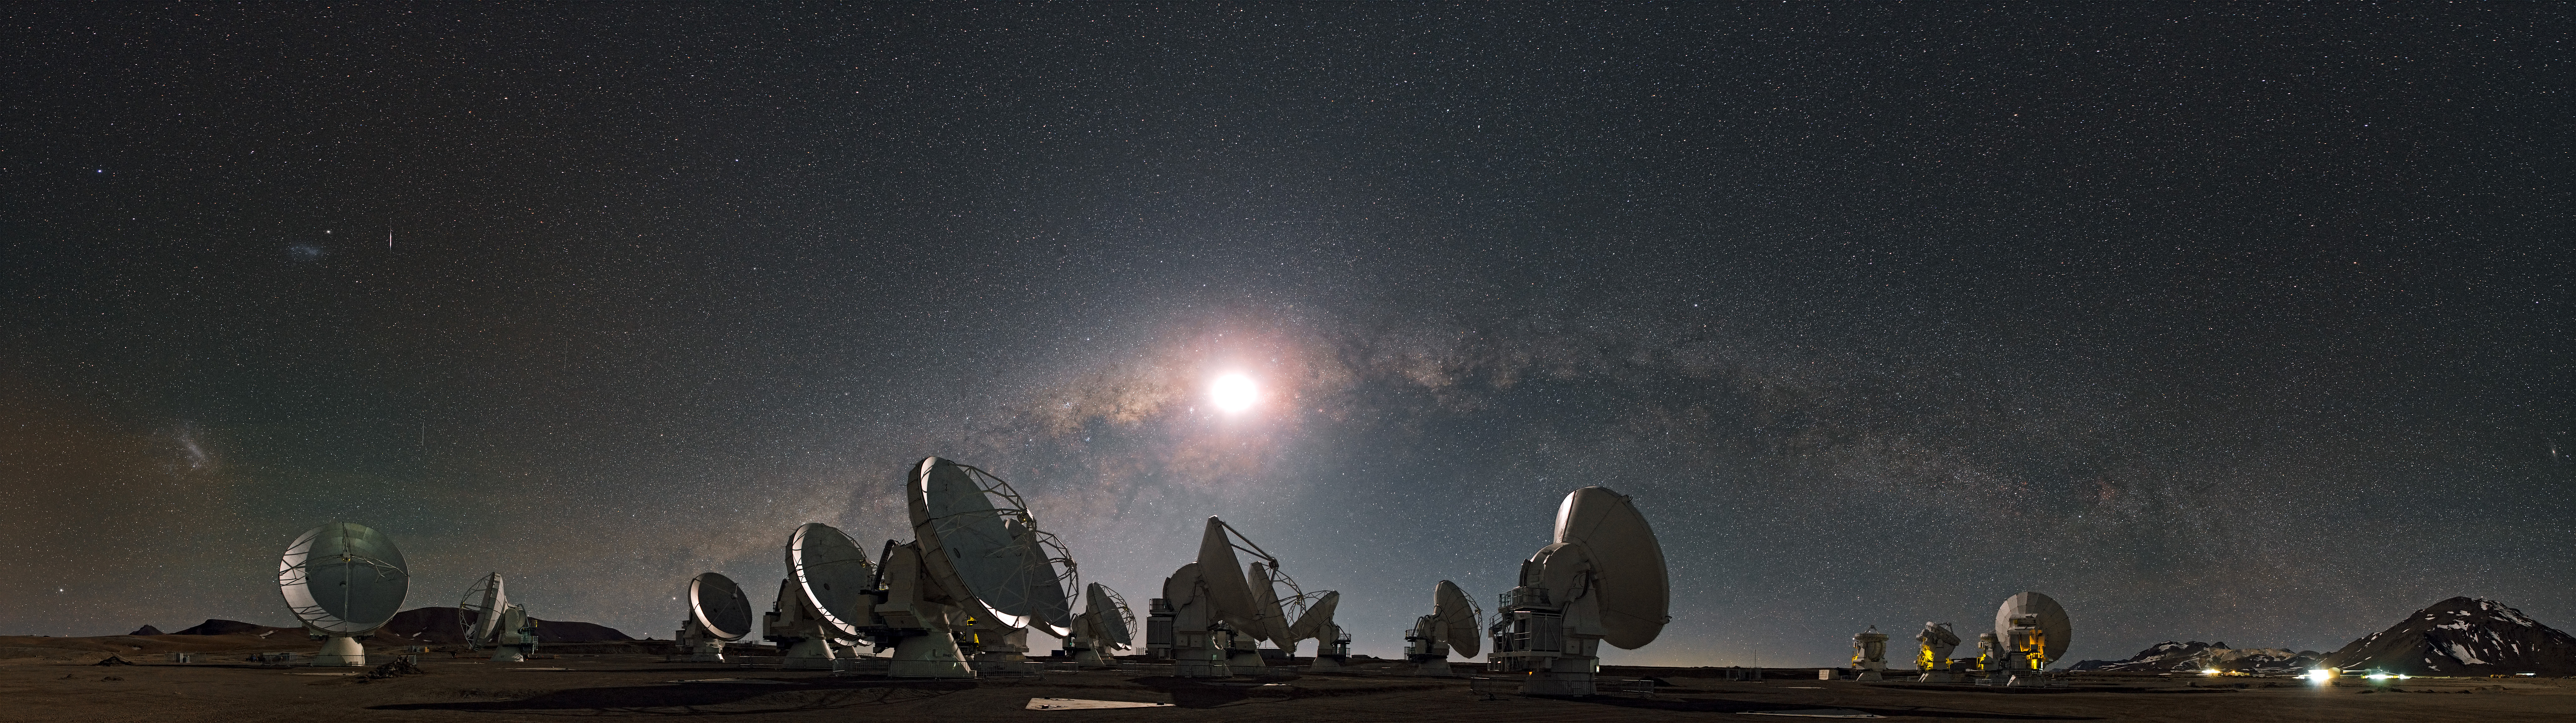 Sci Fi Milky Way 8214x2305